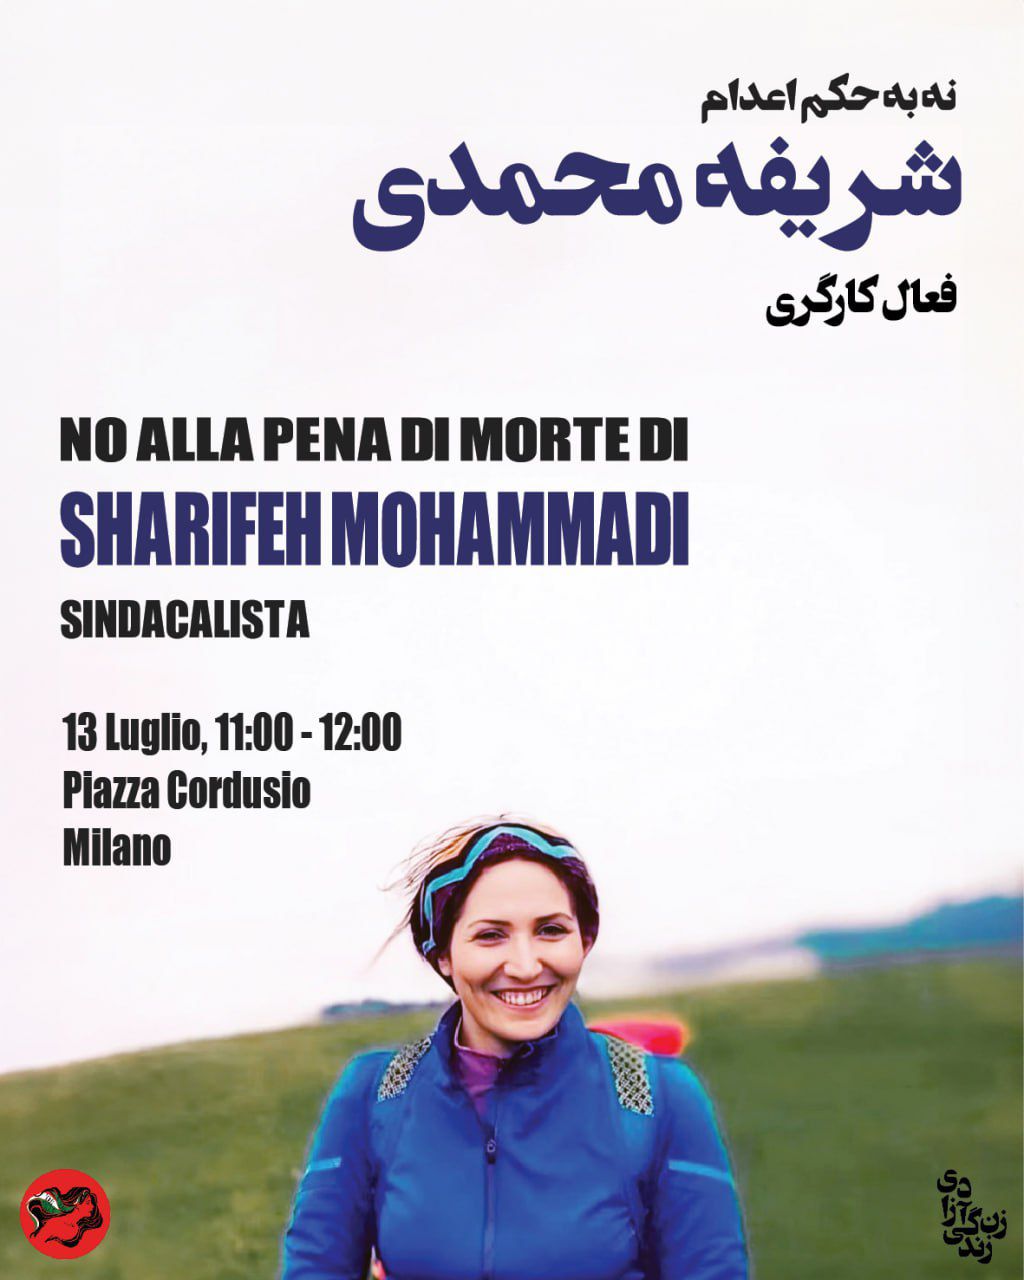 Presidio "No alla pena di morte di Sharifeh Mohammadi" sindacalista iraniana